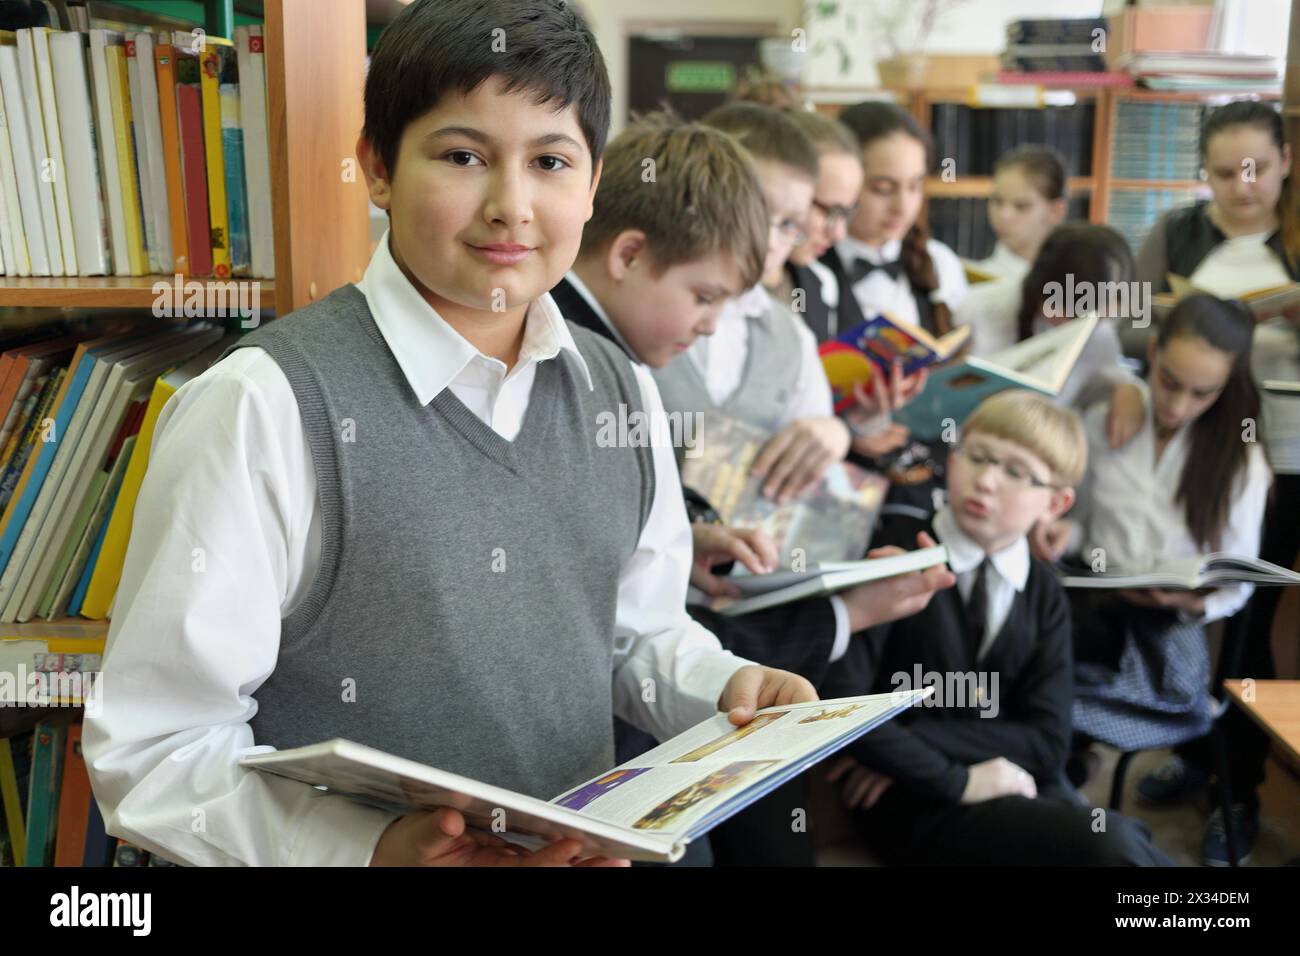 Dieci studenti della biblioteca scolastica che leggono libri sullo sfondo di scaffali con libri, uno in primo piano che guarda in macchina fotografica, si concentrano sul ragazzo a sinistra Foto Stock